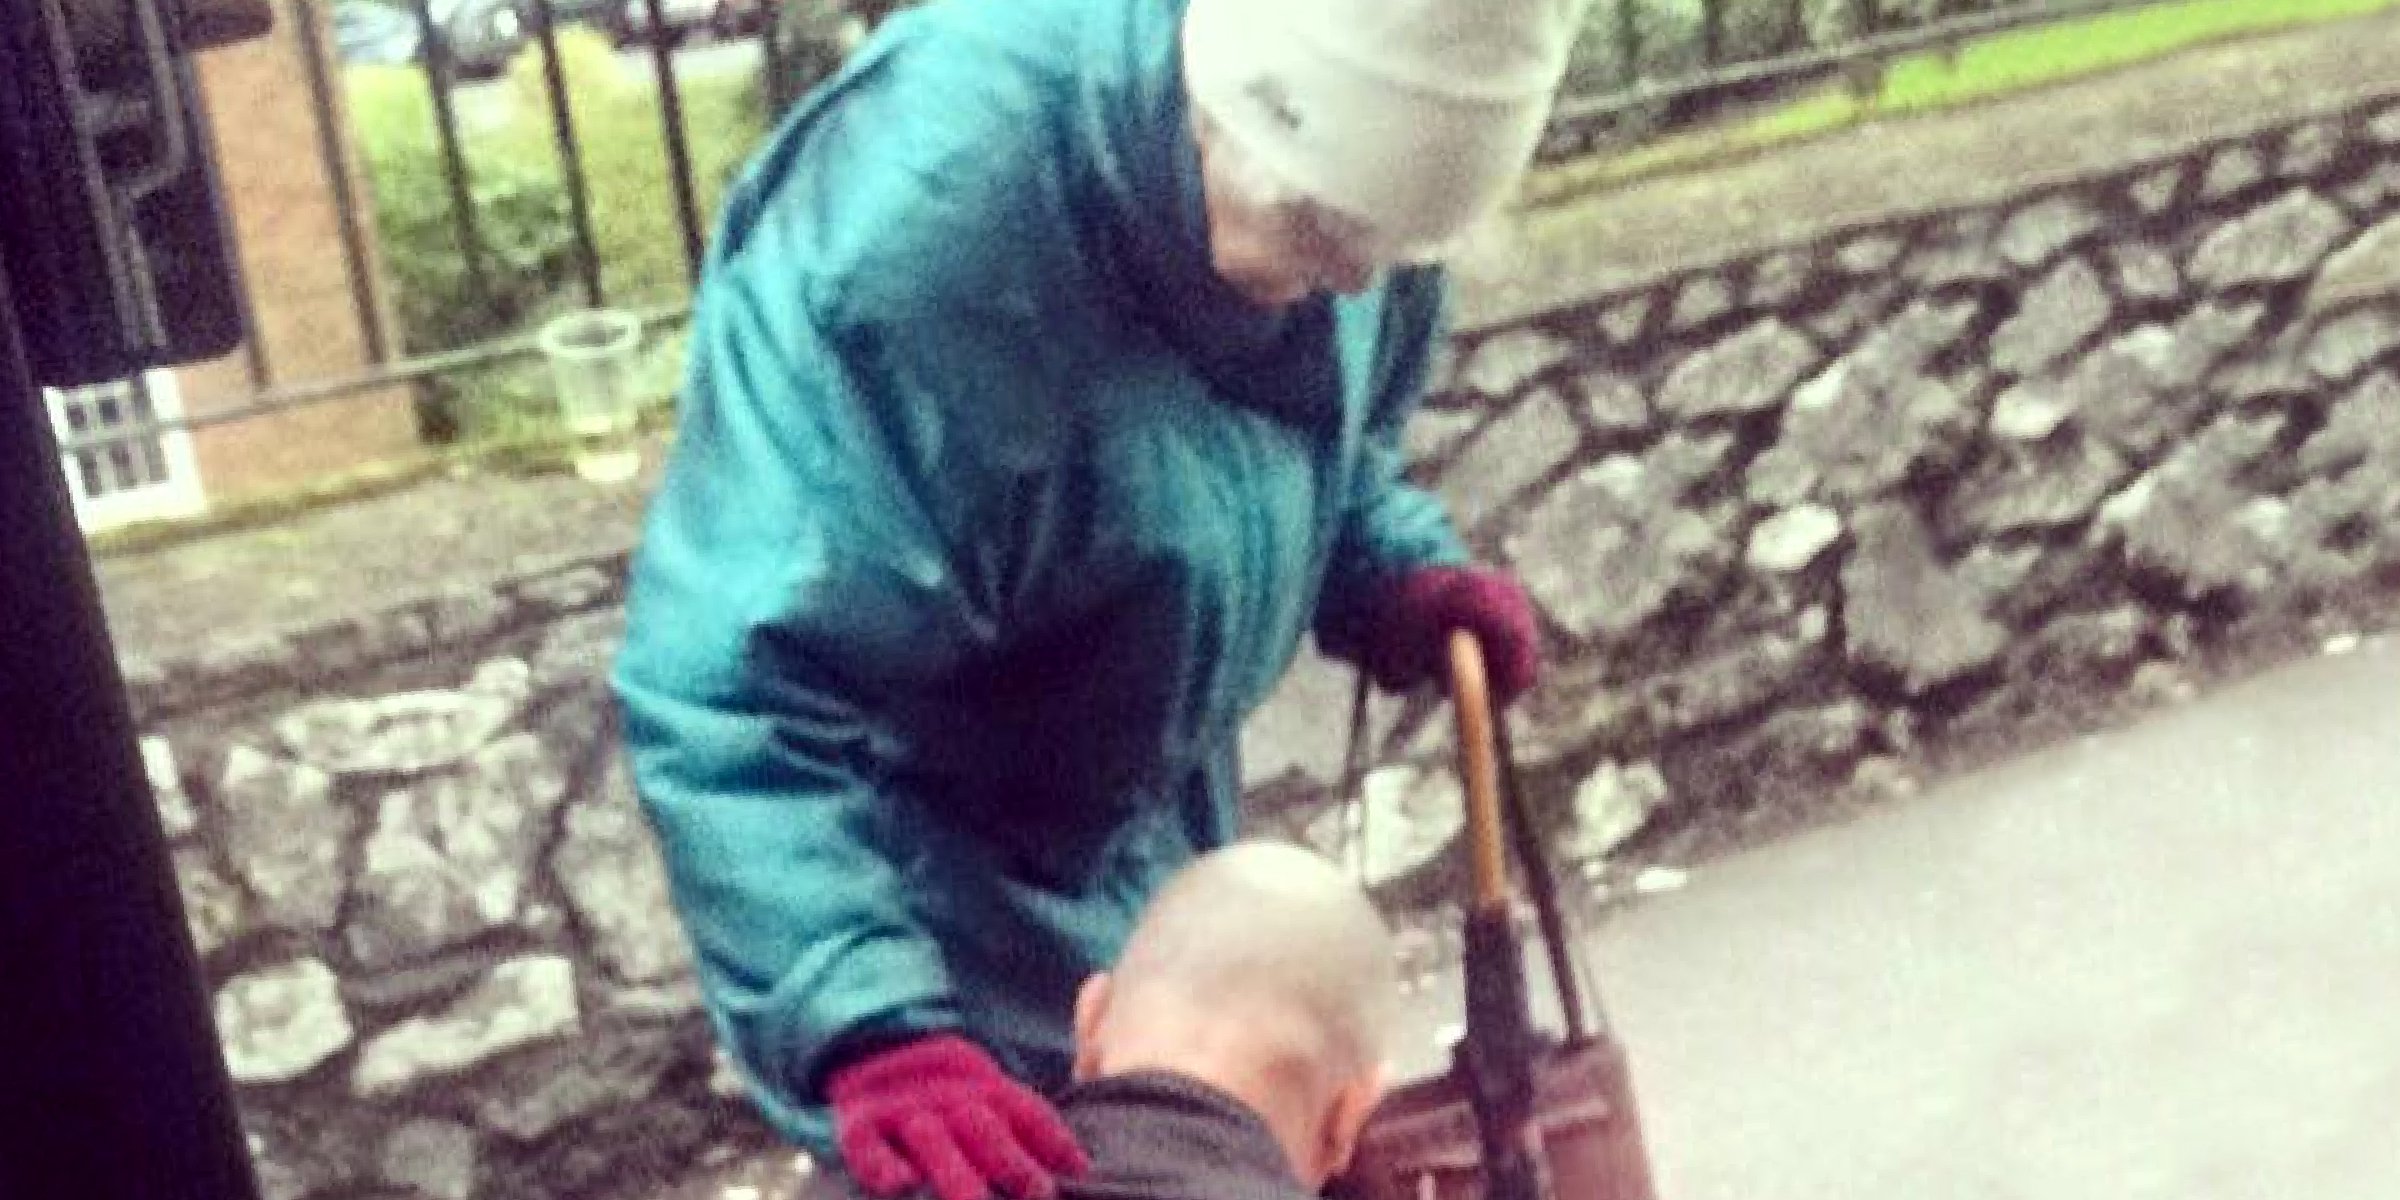 Un chauffeur de bus noue les lacets des chaussures d'une dame âgée | Source : Facebook.com/claralouiseobrien